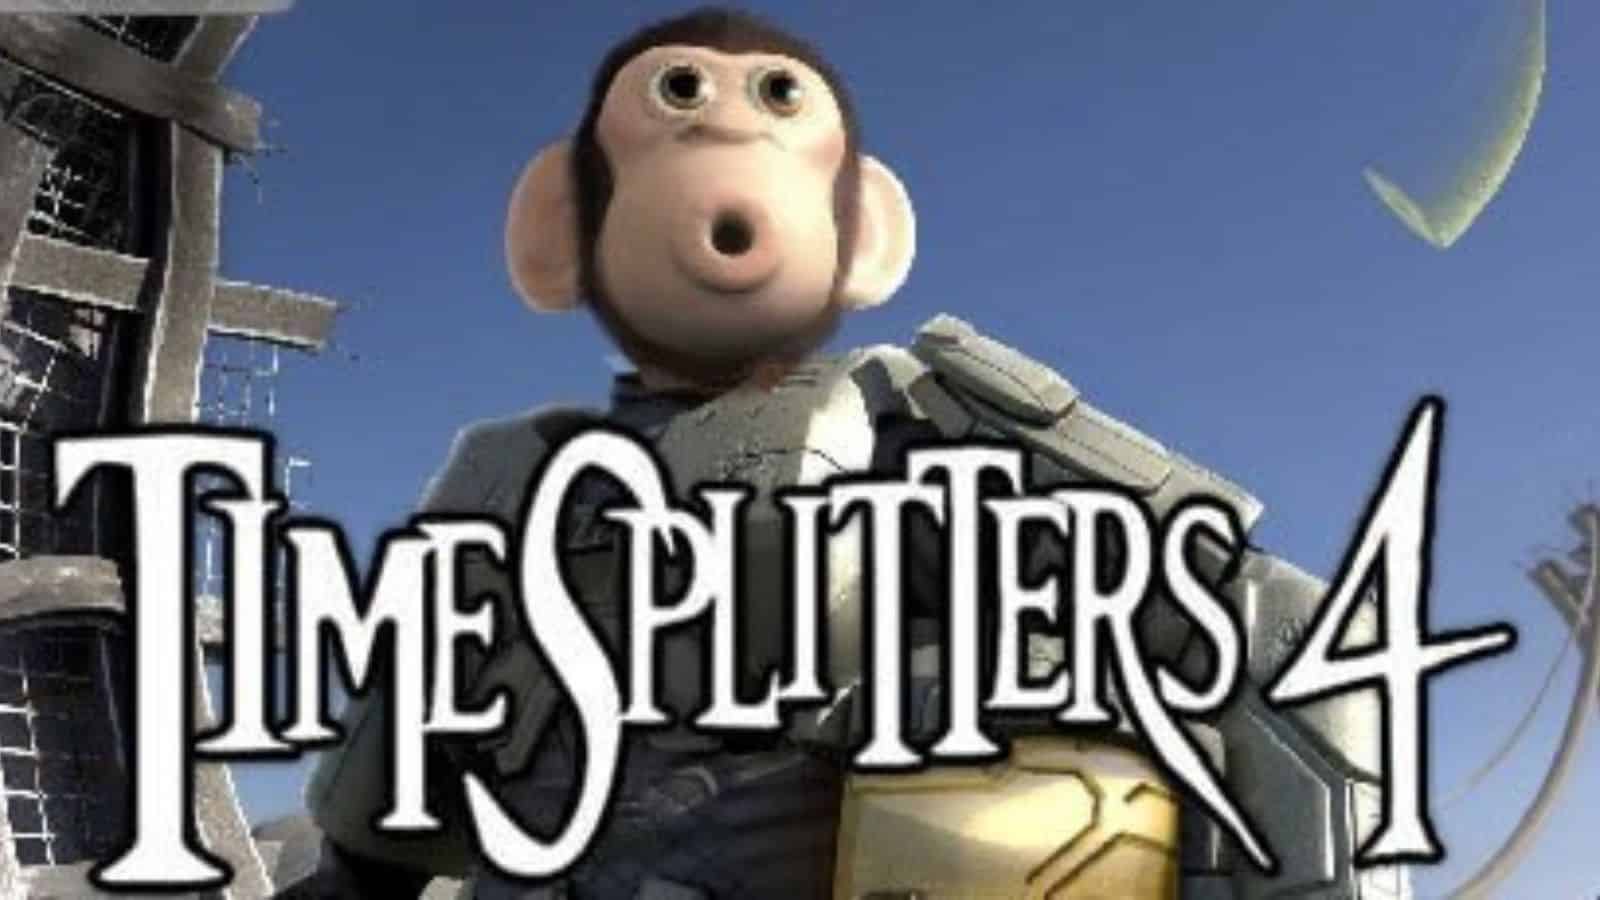 TimeSPlitters 4 logo released for E3 2008